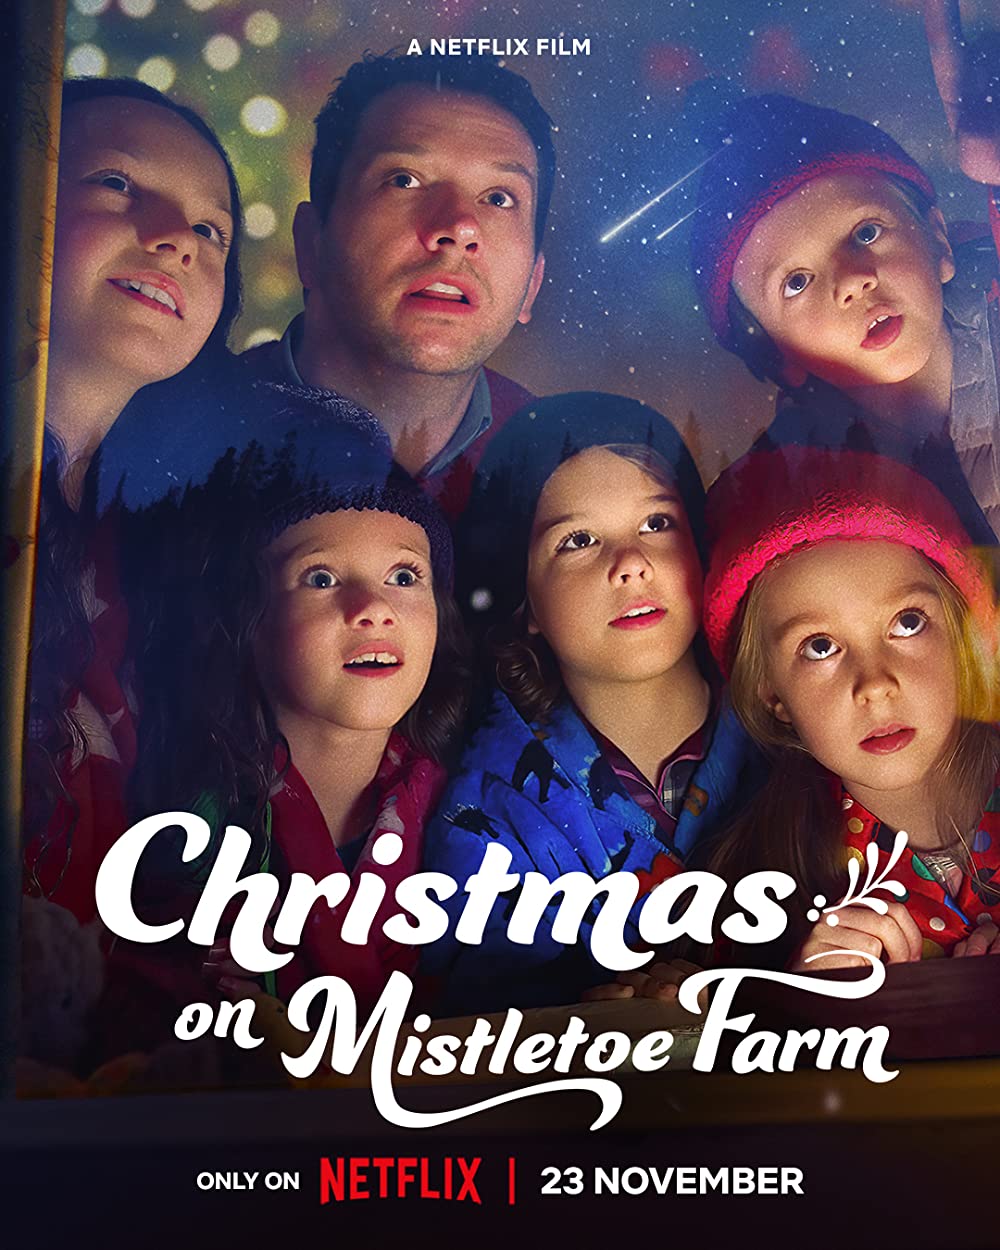 ดูหนังออนไลน์ฟรี ดูหนัง NETFLIX CHRISTMAS ON MISTLETOE FARM 2022 คริสต์มาสใต้ต้นรัก movie678